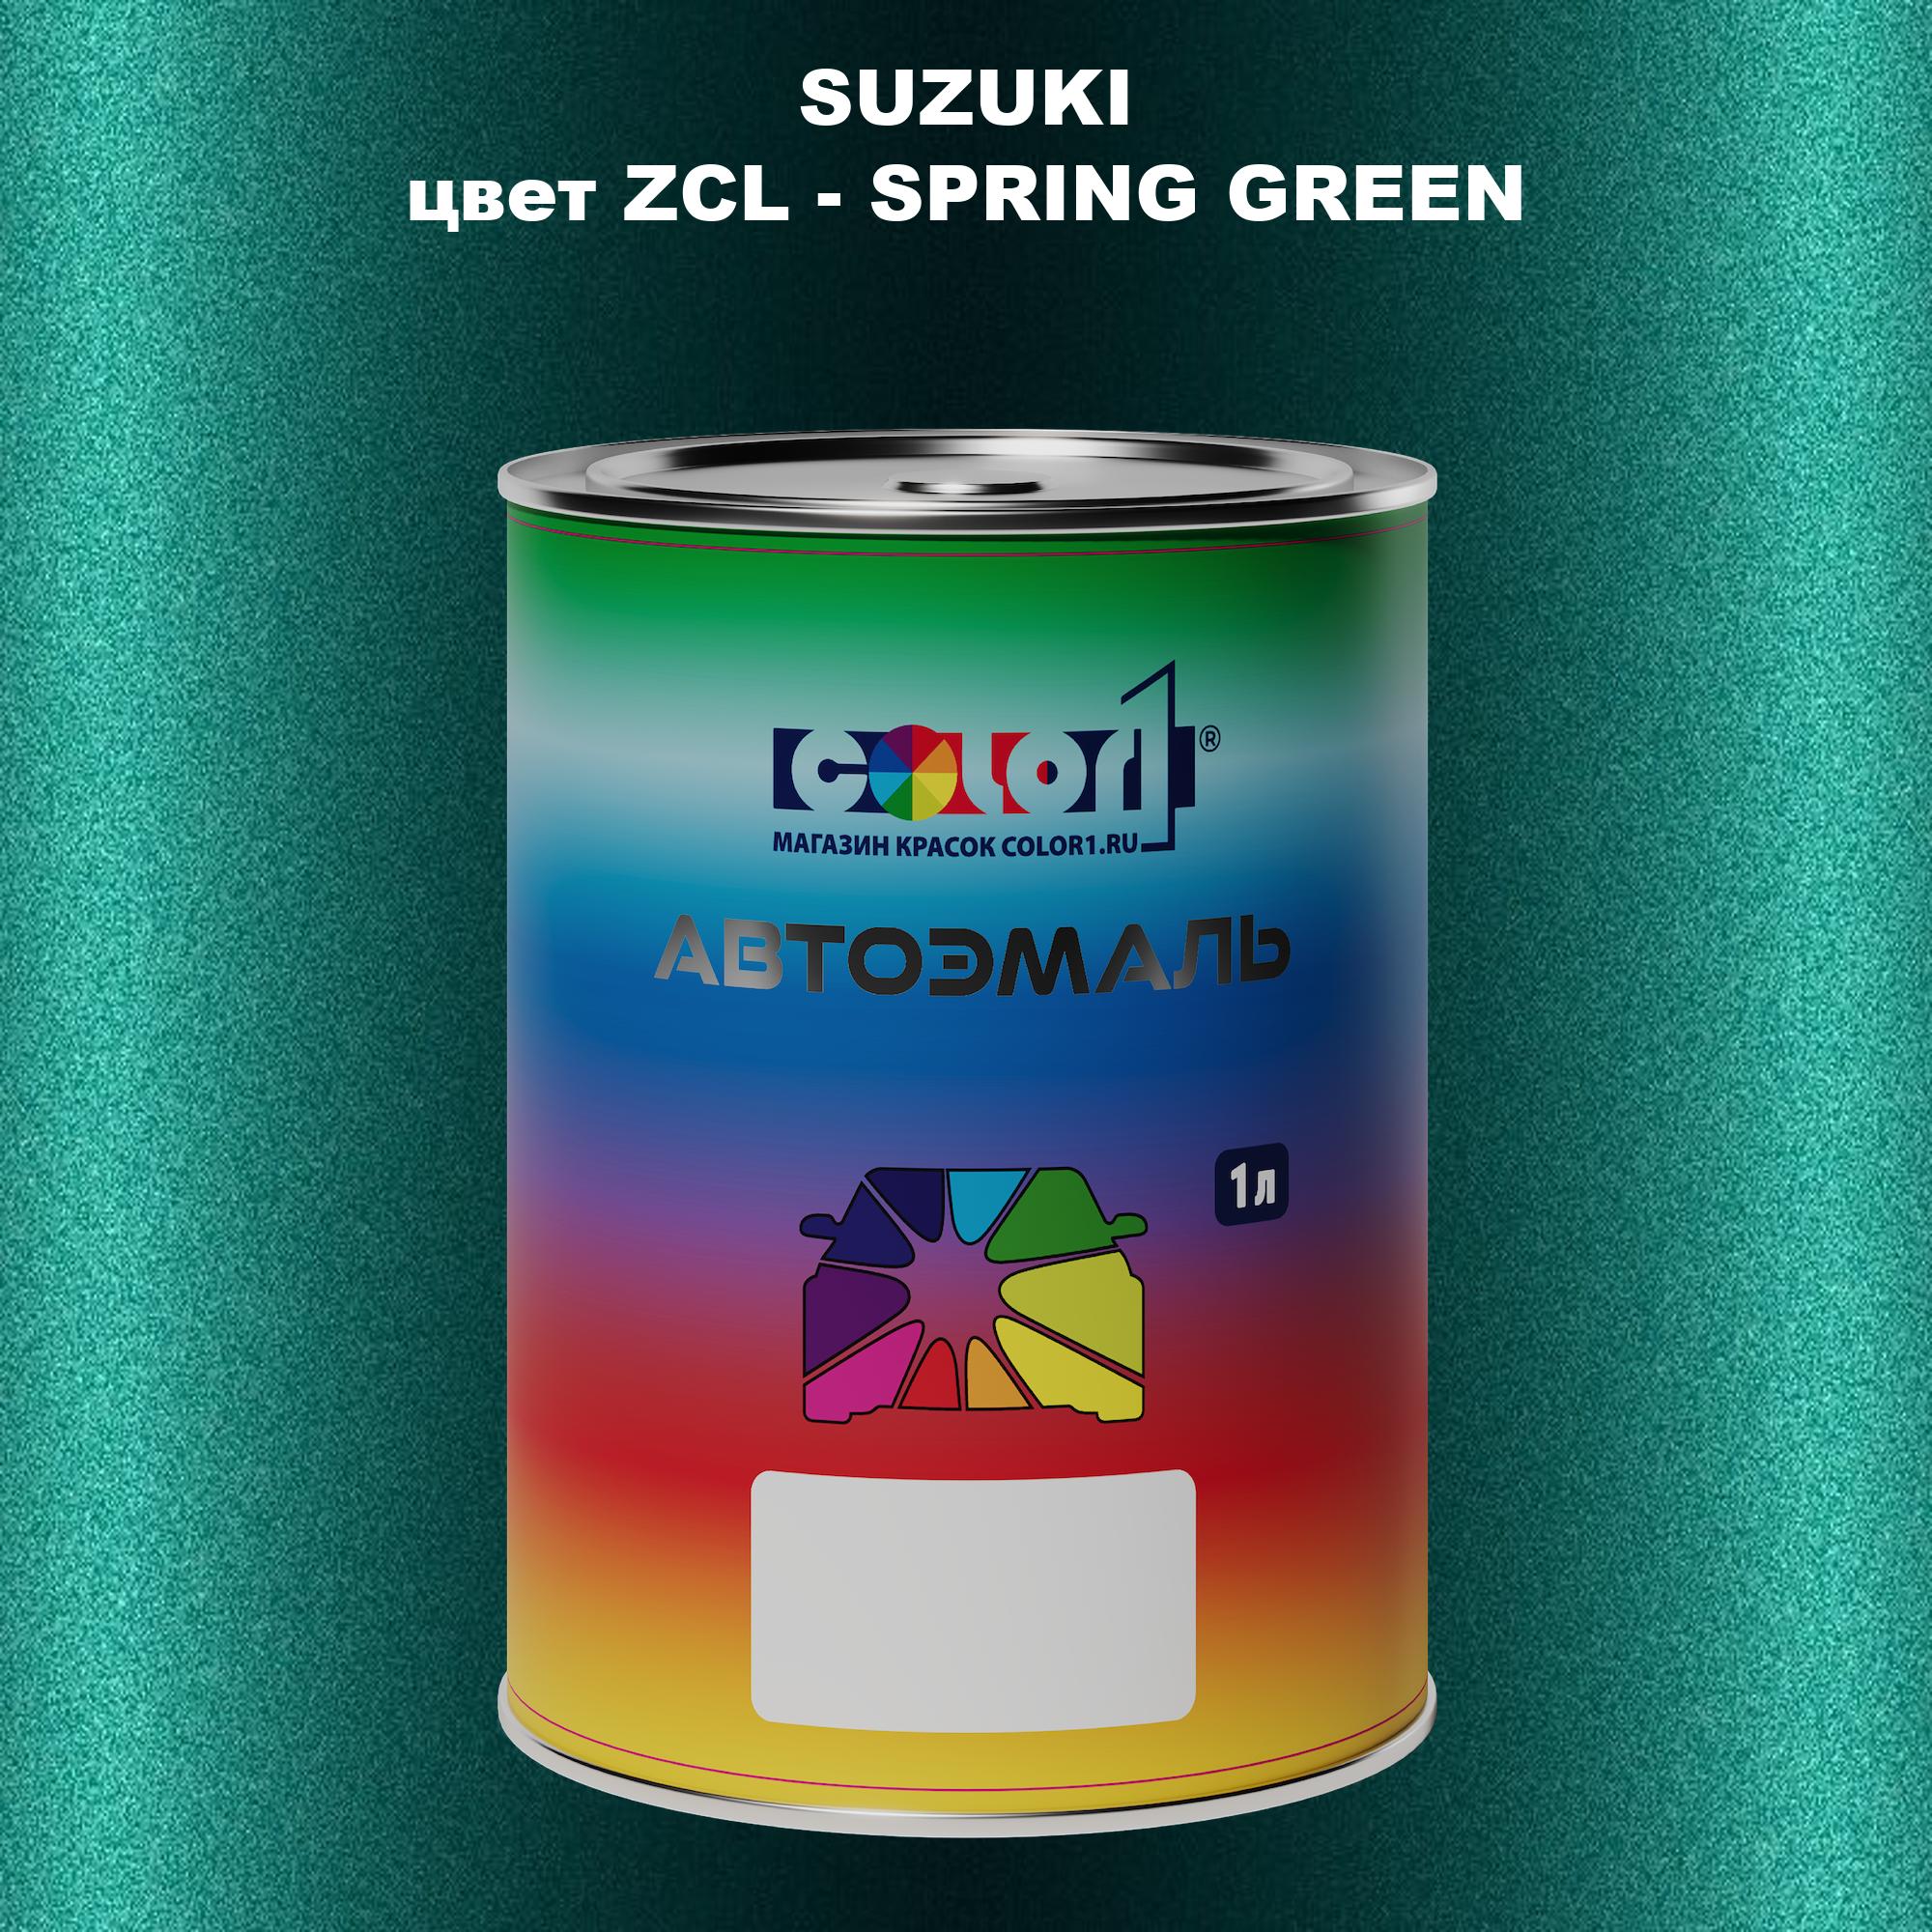 Автомобильная краска COLOR1 для SUZUKI, цвет ZCL - SPRING GREEN